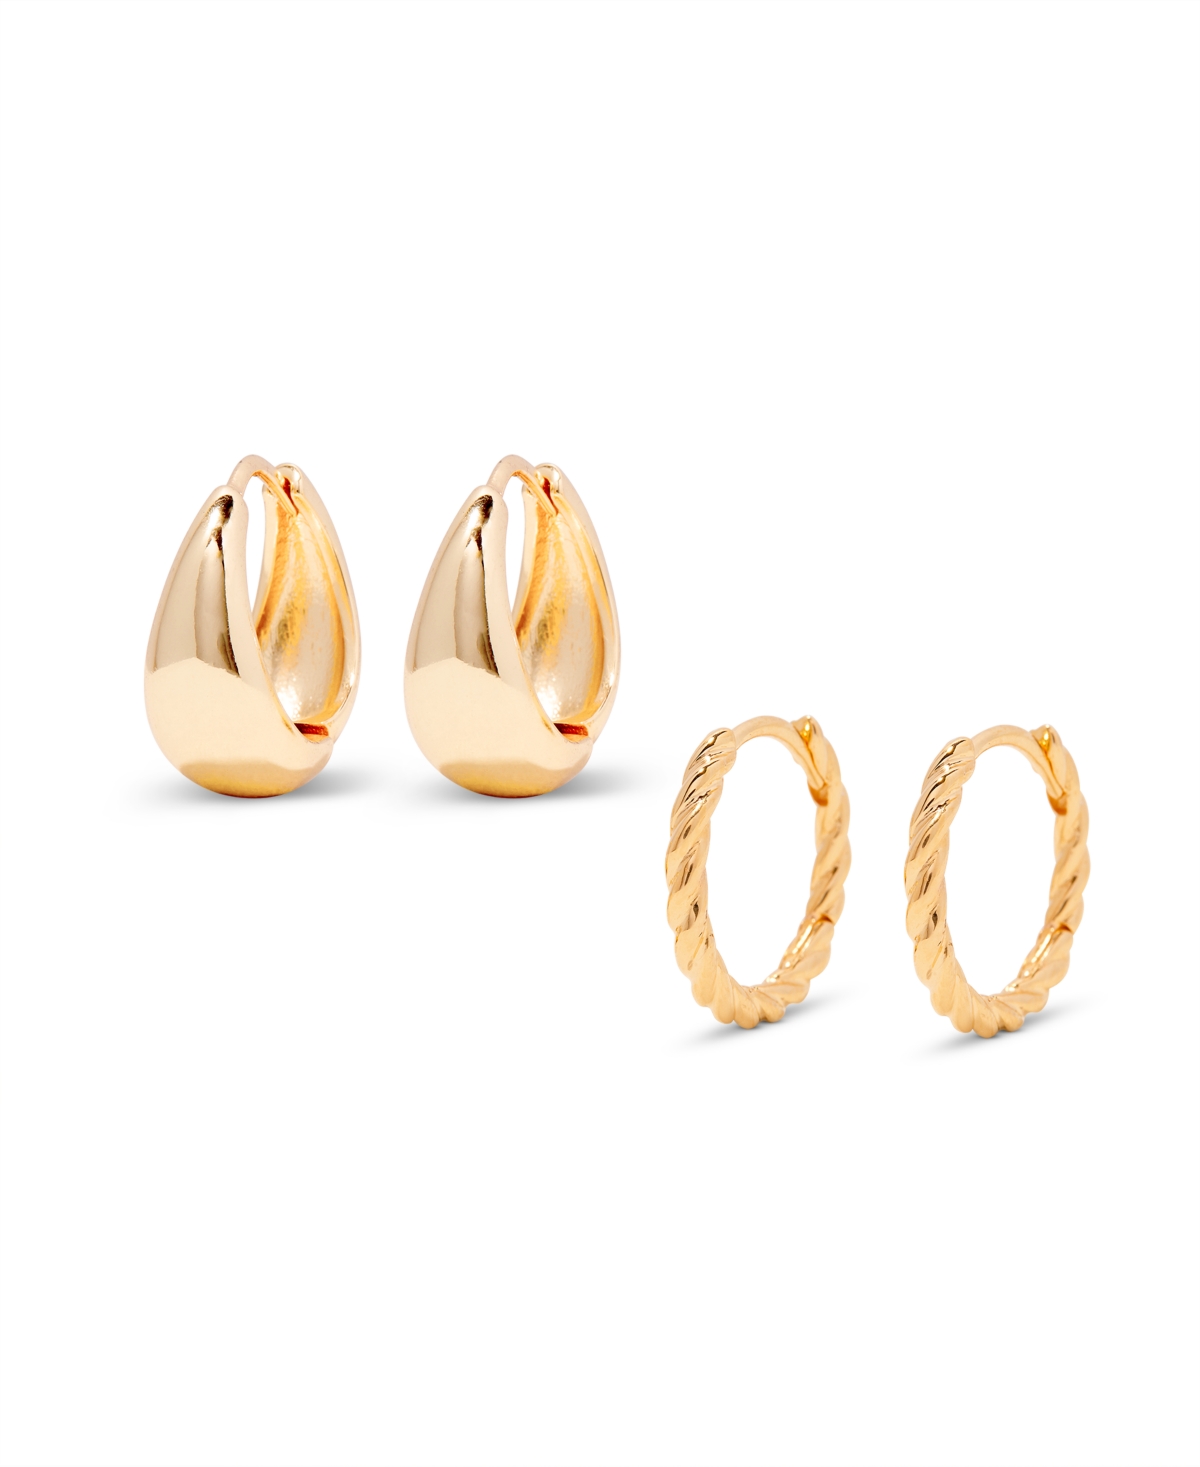 "14k Gold" Lottie Earring Set, 4 Piece - Gold Vermeil